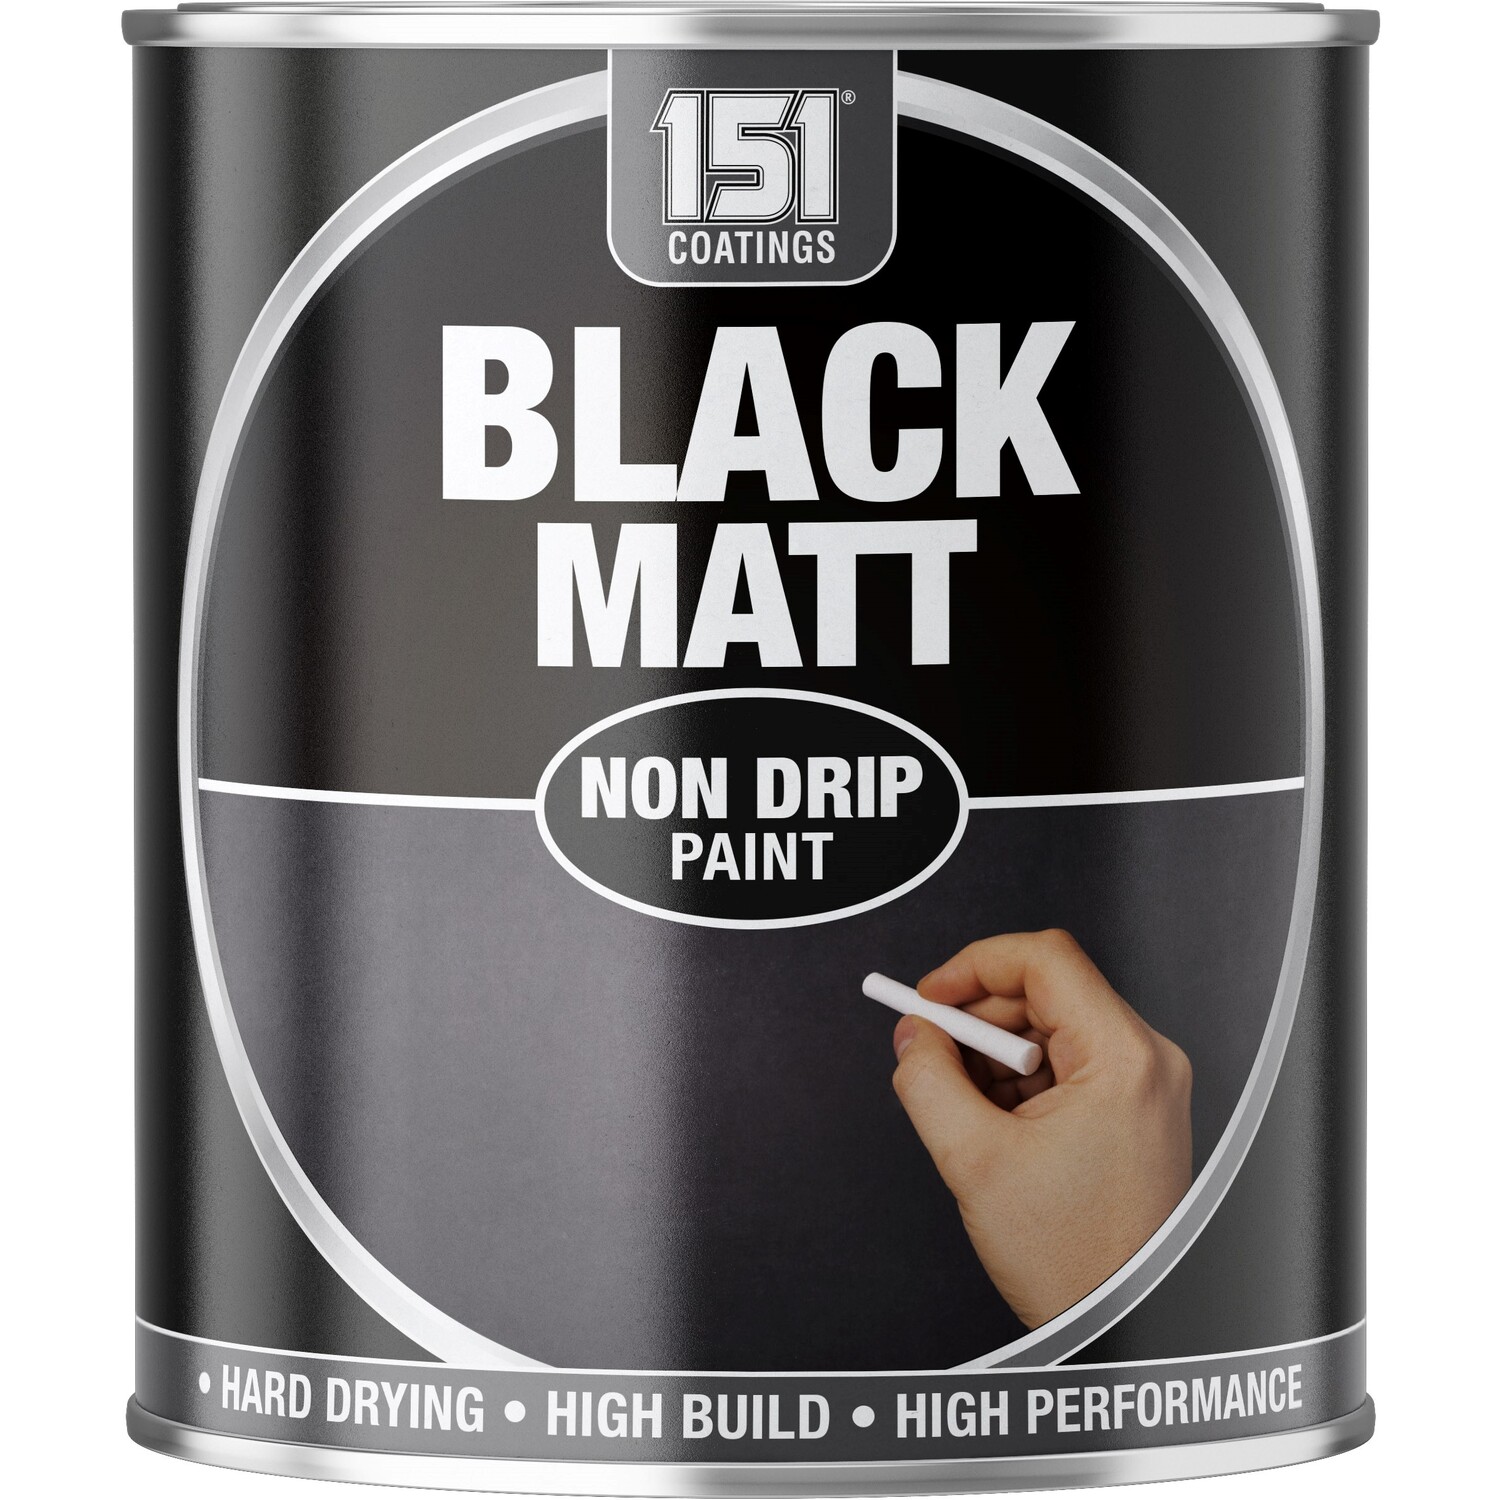 Wilko Quick Dry Furniture Pure Brilliant Black Satin Paint 250ml